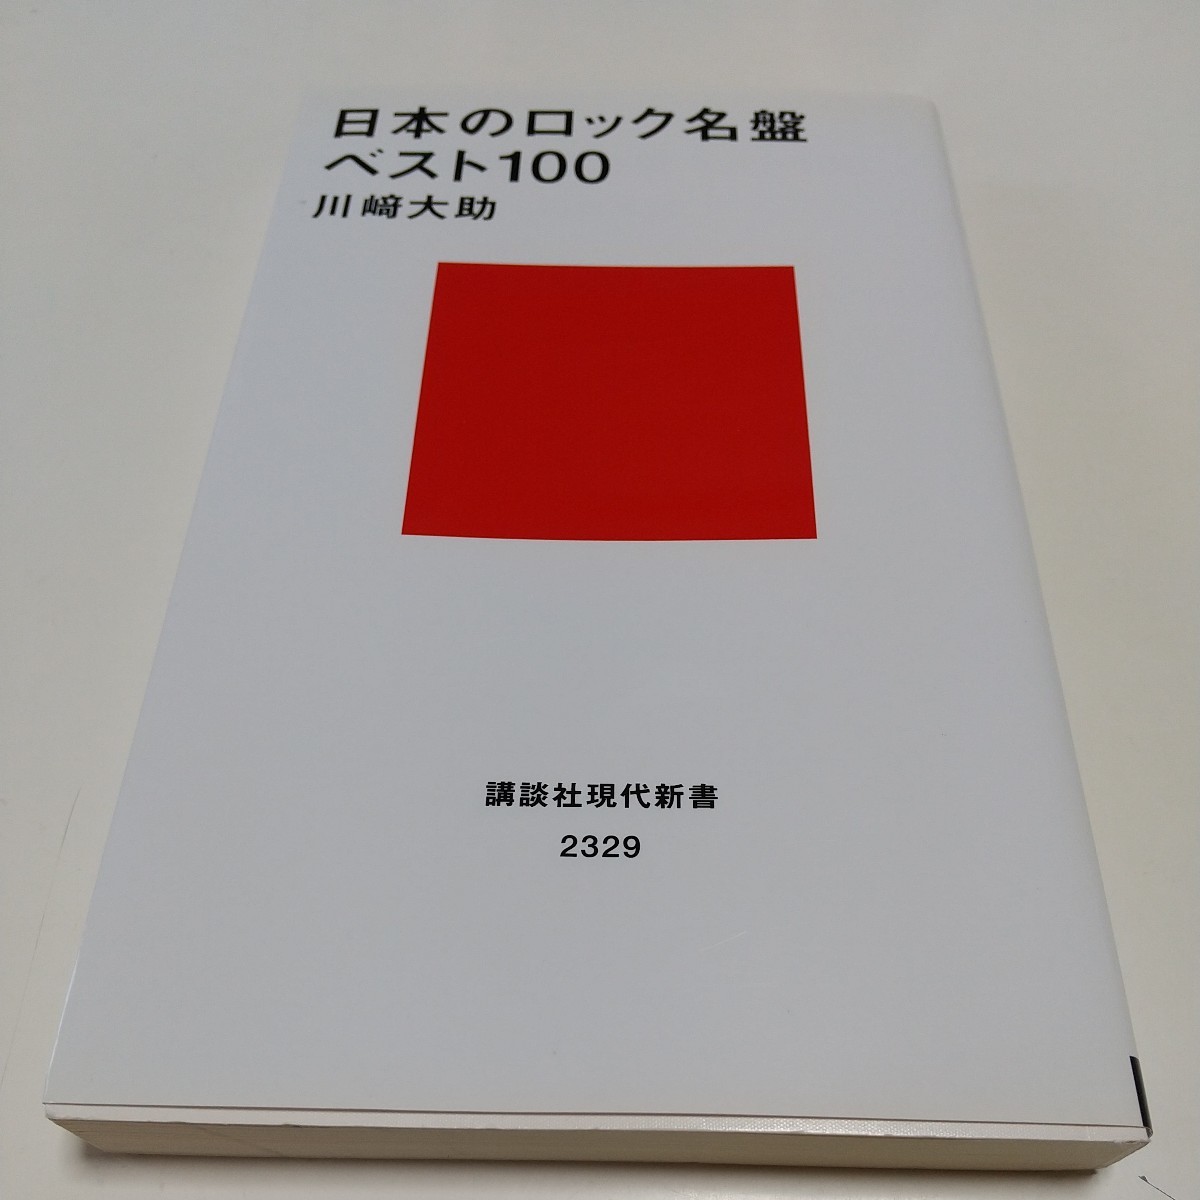  японский блокировка название запись лучший 100 (.. фирма настоящее время новая книга 2329) Kawasaki большой .| работа б/у 01101F014